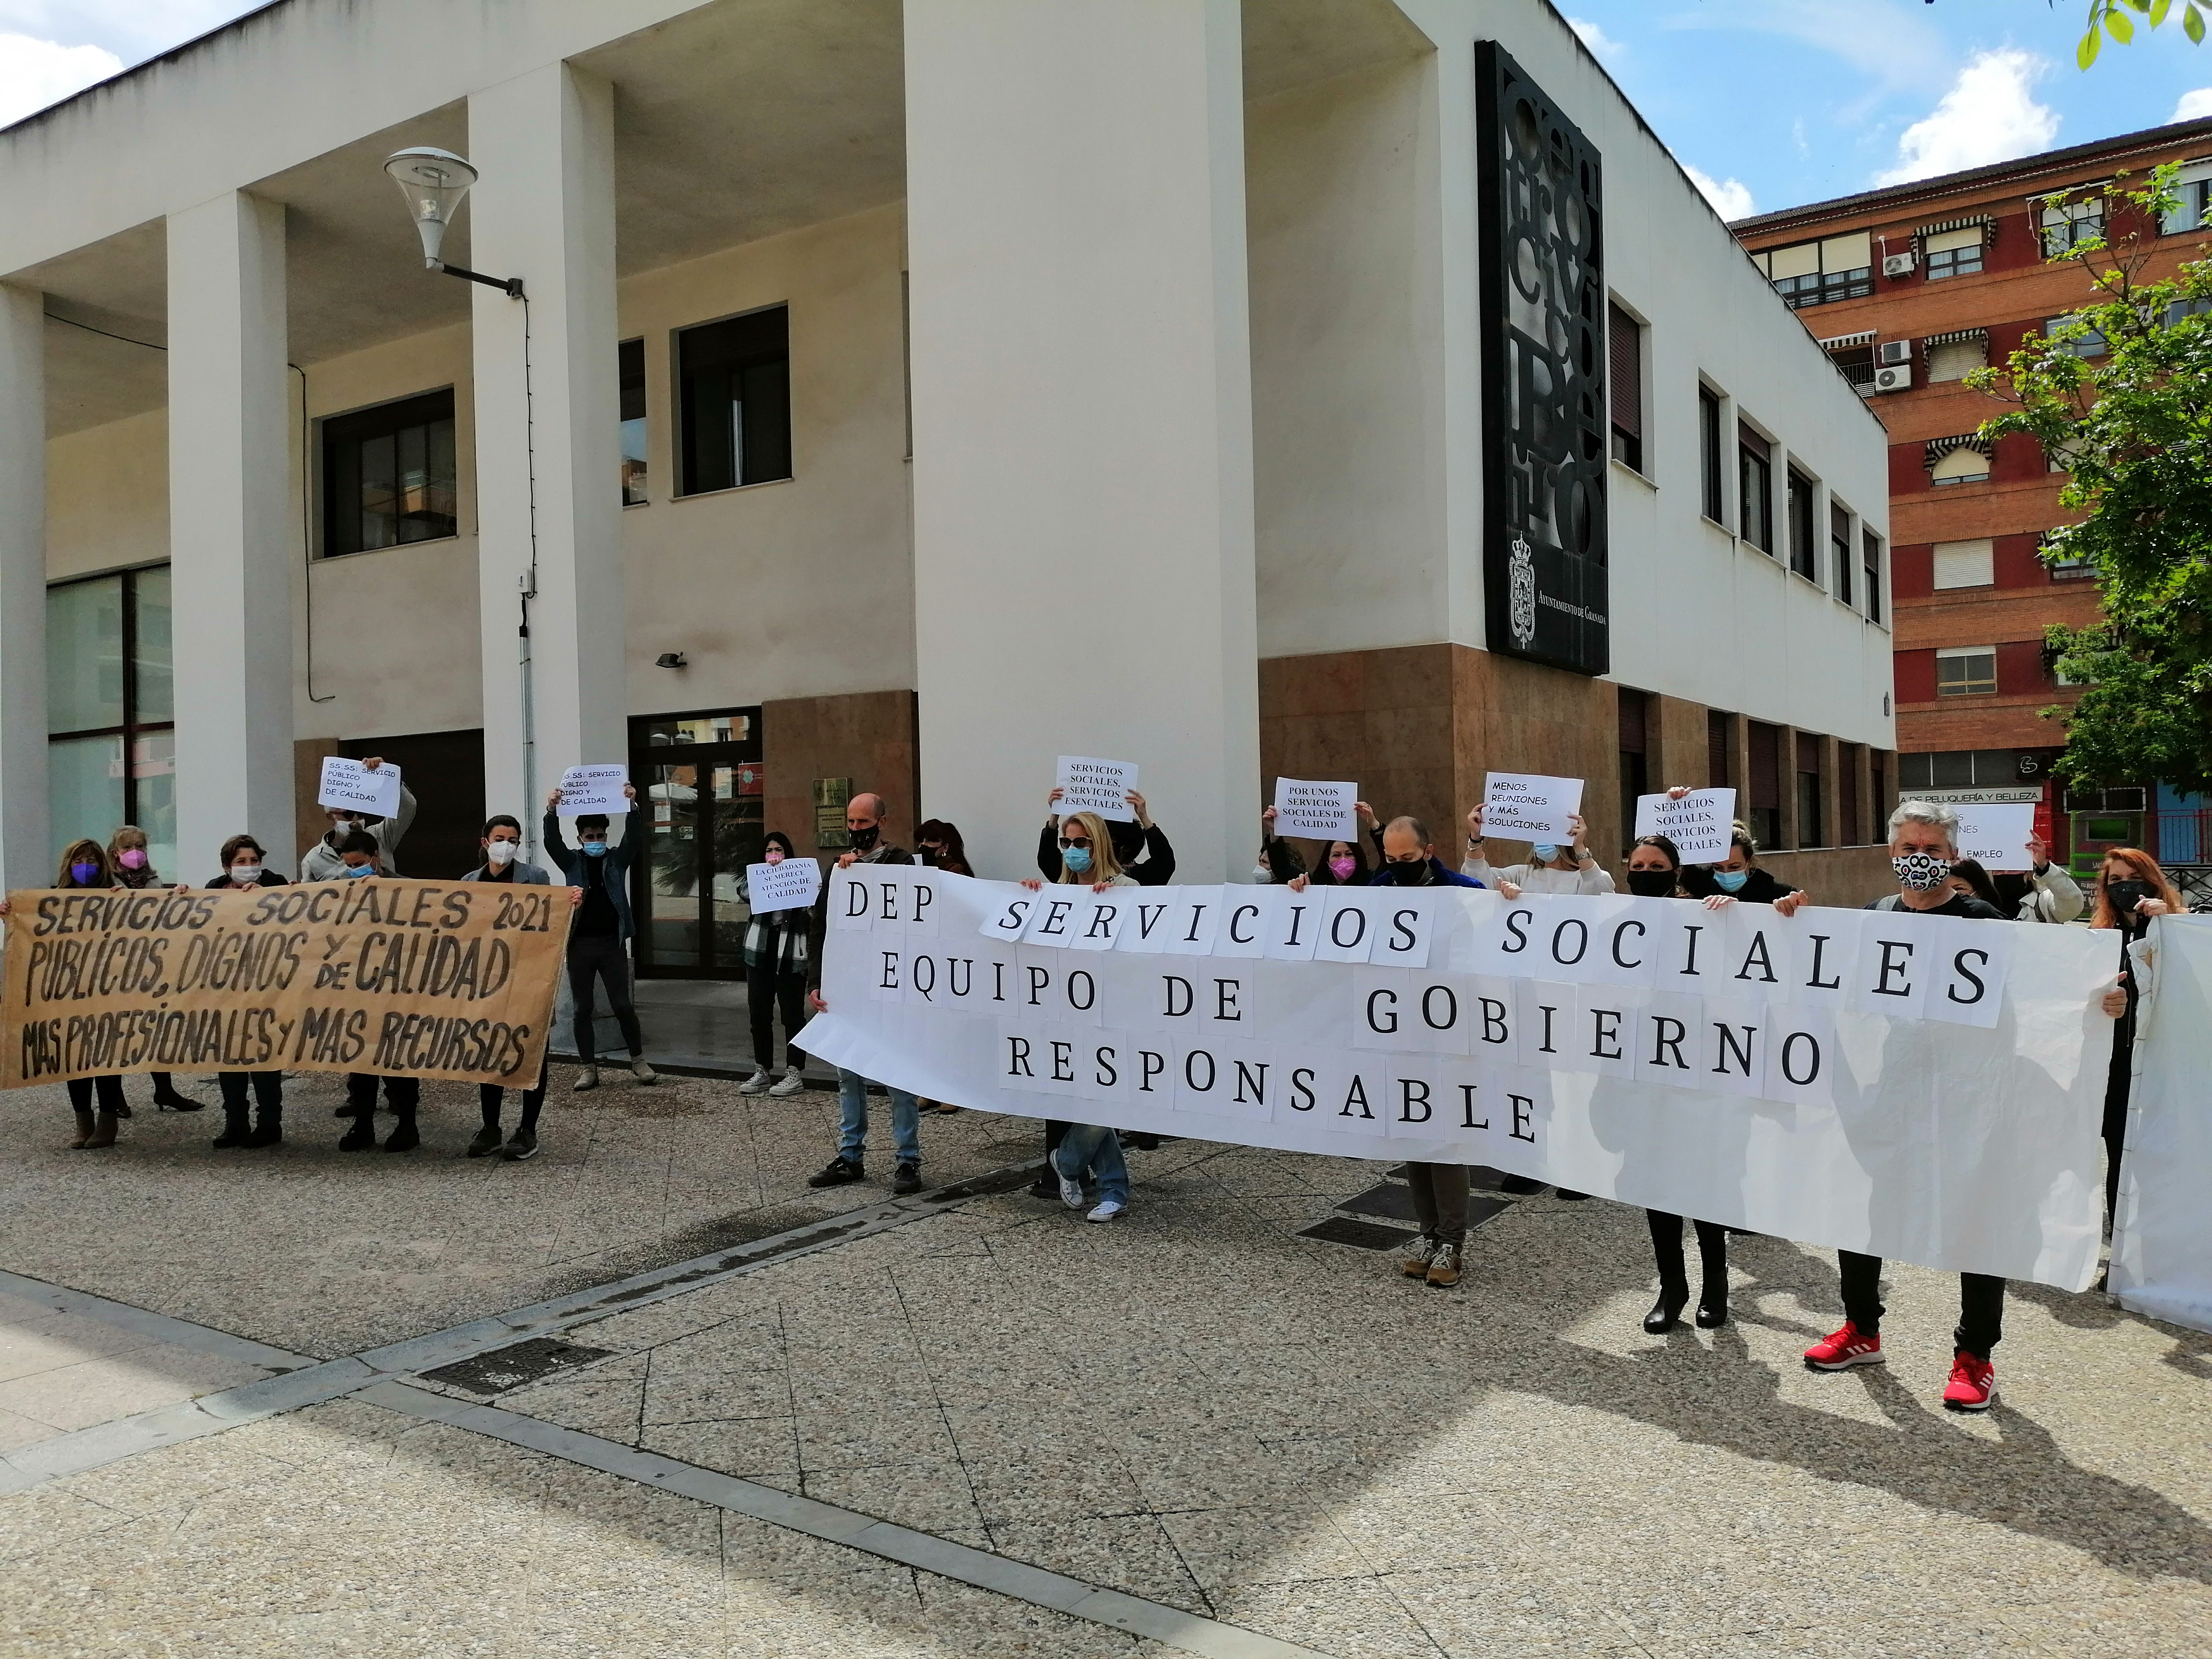 Los Servicios Sociales municipales de Granada van a la huelga este jueves ante la falta de respuestas